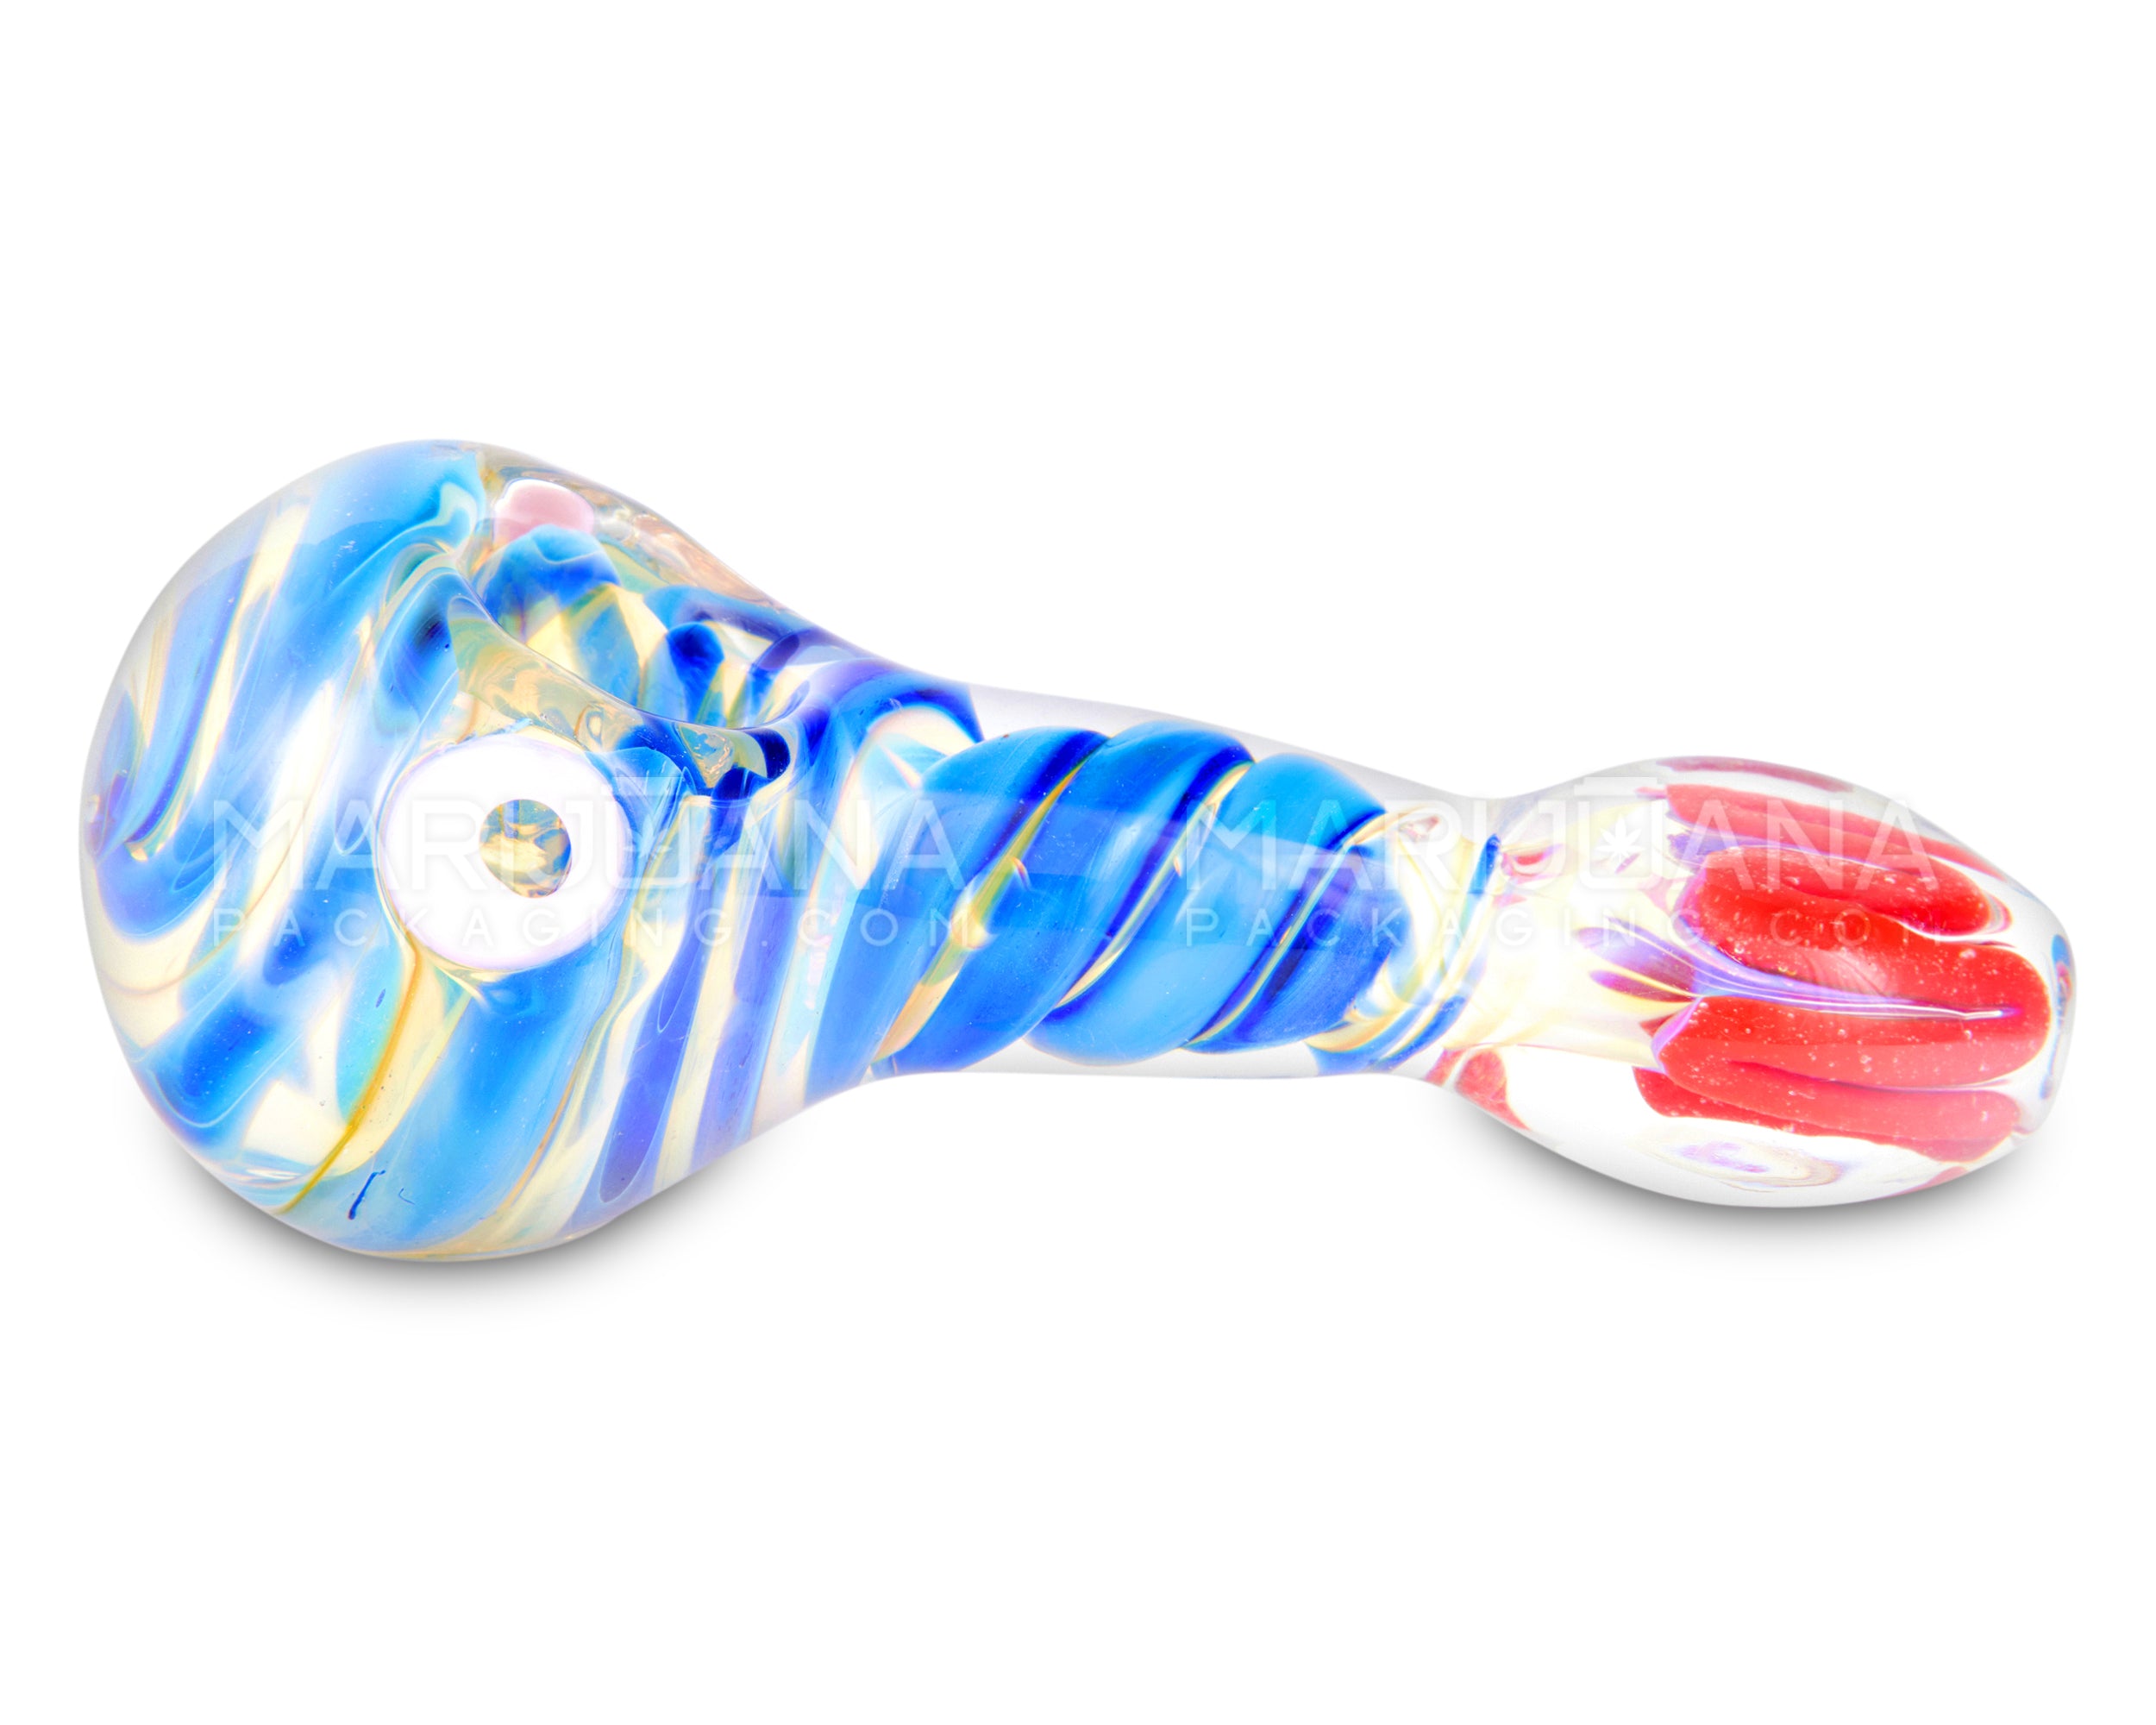 Flat Mouthpiece Spiral & Fumed Spoon Hand Pipe w/ Swirls & Knocker | 4.5in Long - Glass - Assorted - 5